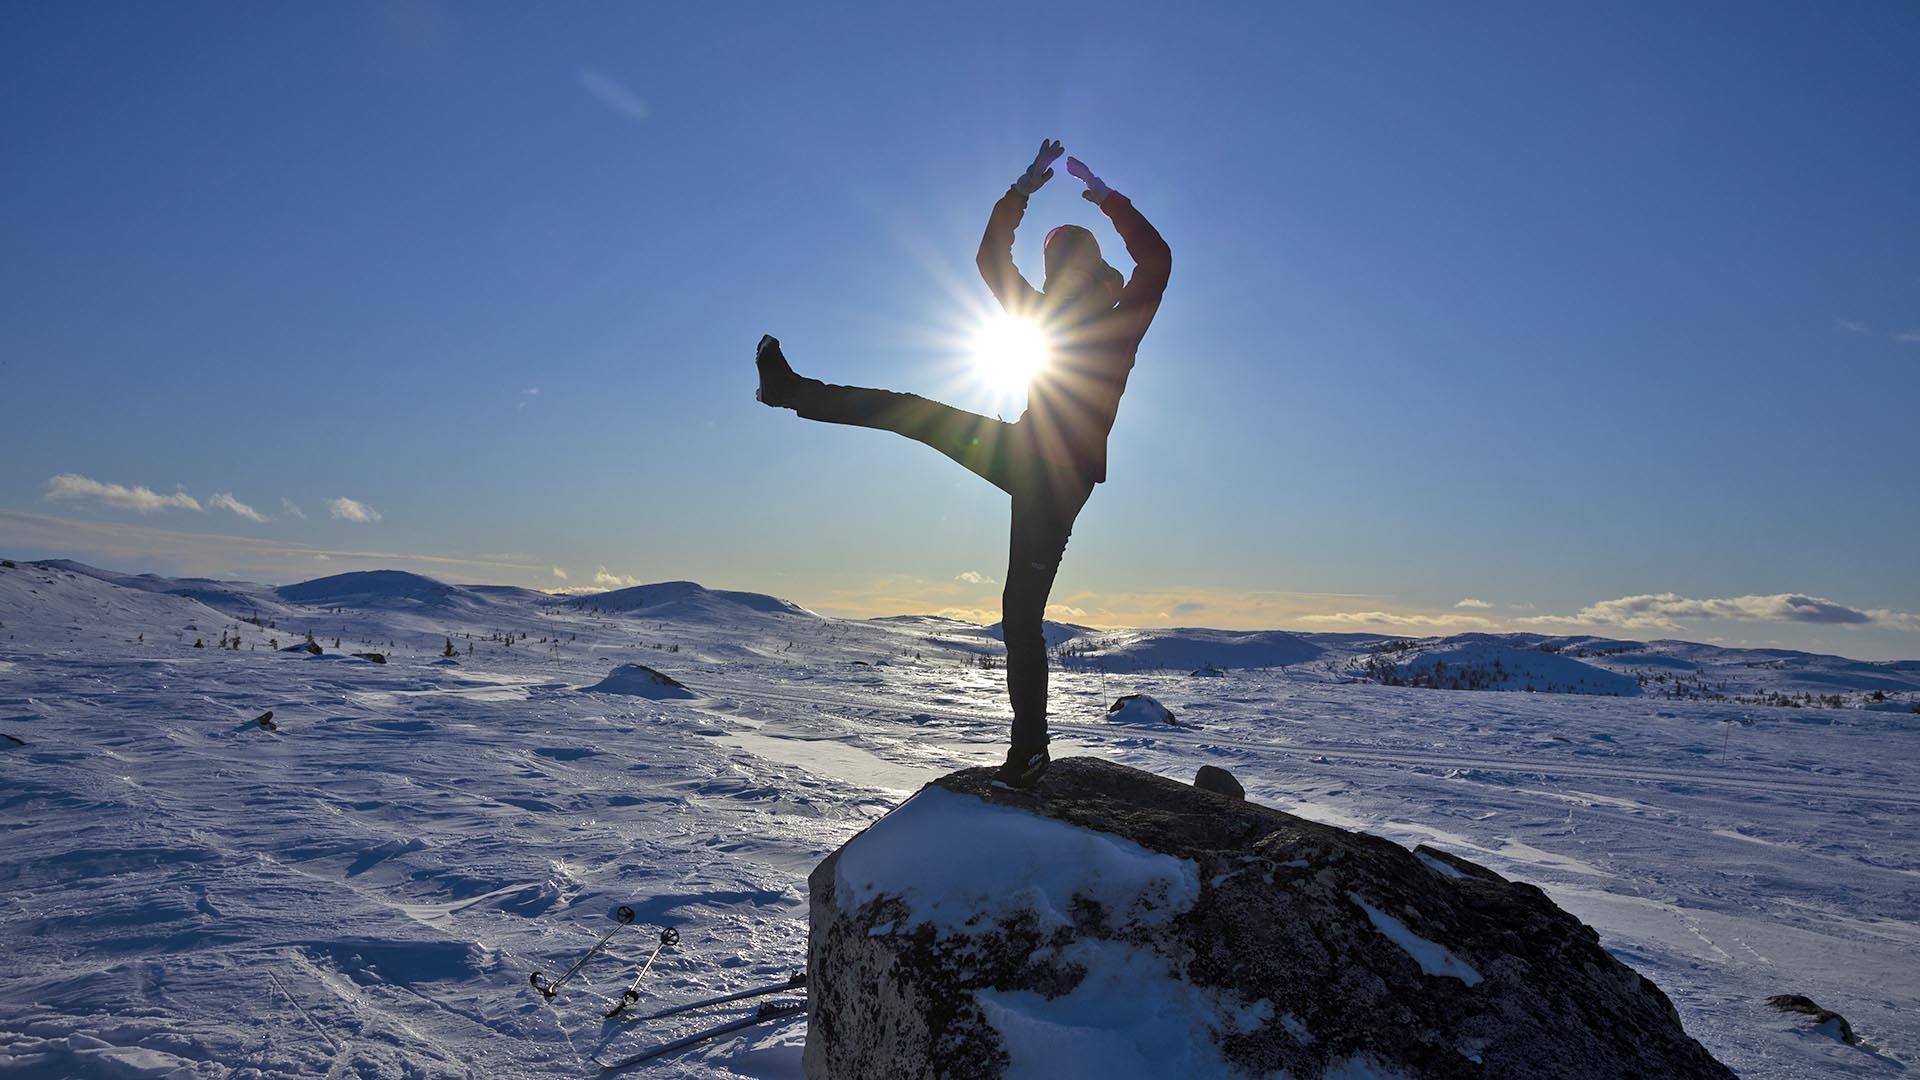 Eim Mädchen auf einem Felsblock im Winterfjell im Gegenlicht. Sie steht in einer Positur, wo die Sonne einen vielstrahligen Stern zwischen einem ihrer Beine und einem Arm bildet.